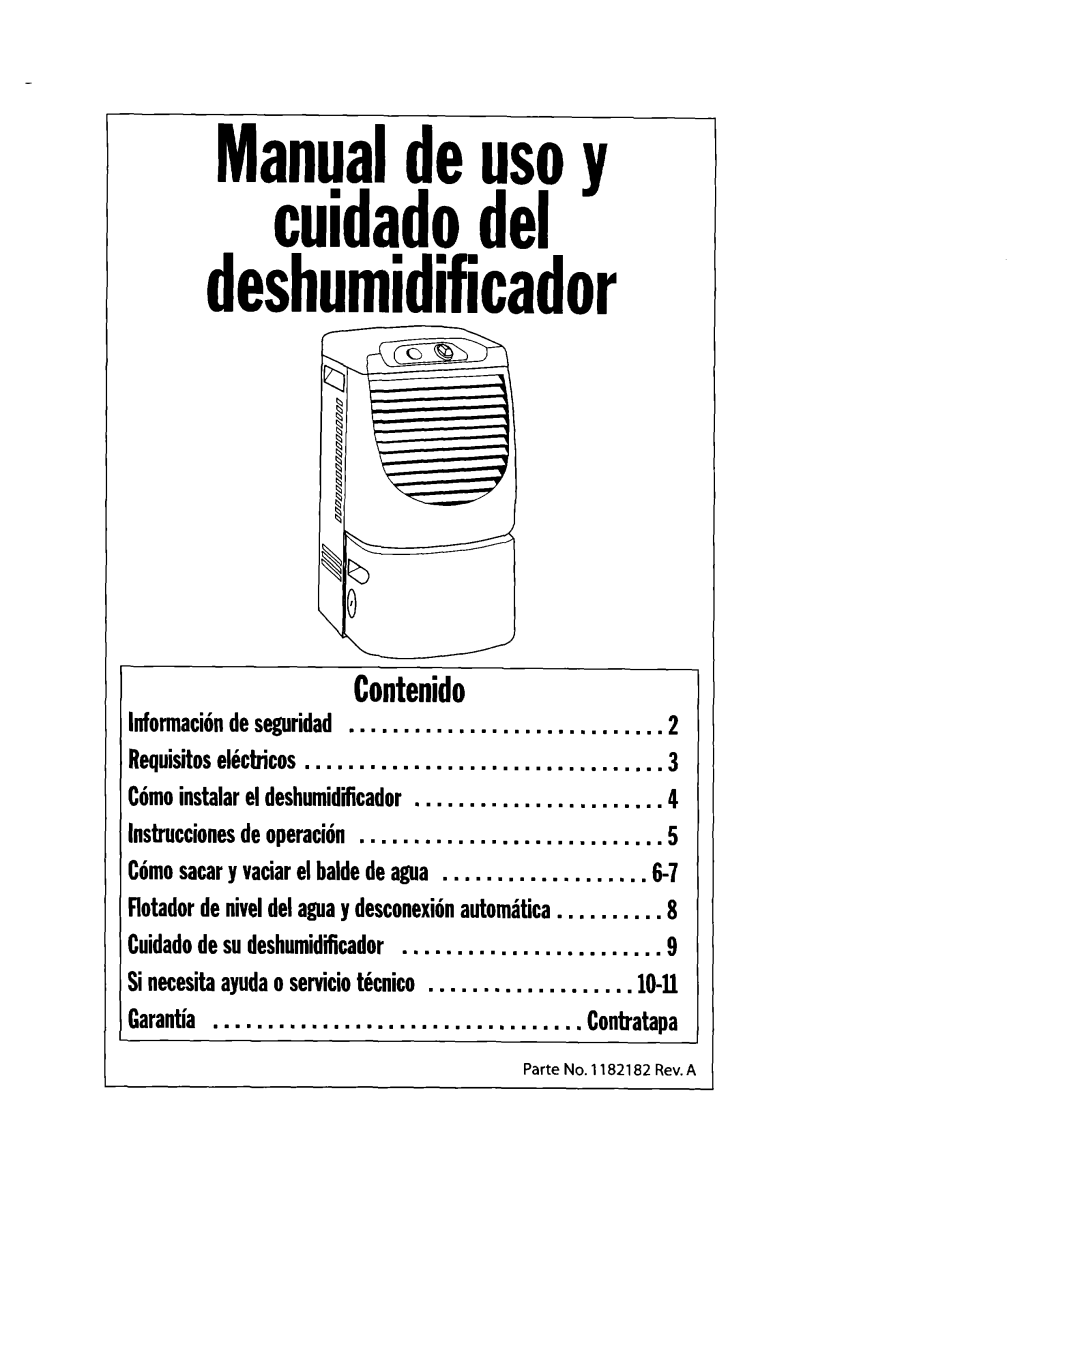 Whirlpool 1182182 manual deshumidificador, Contenido, Manualdeusoy cuidadodel 